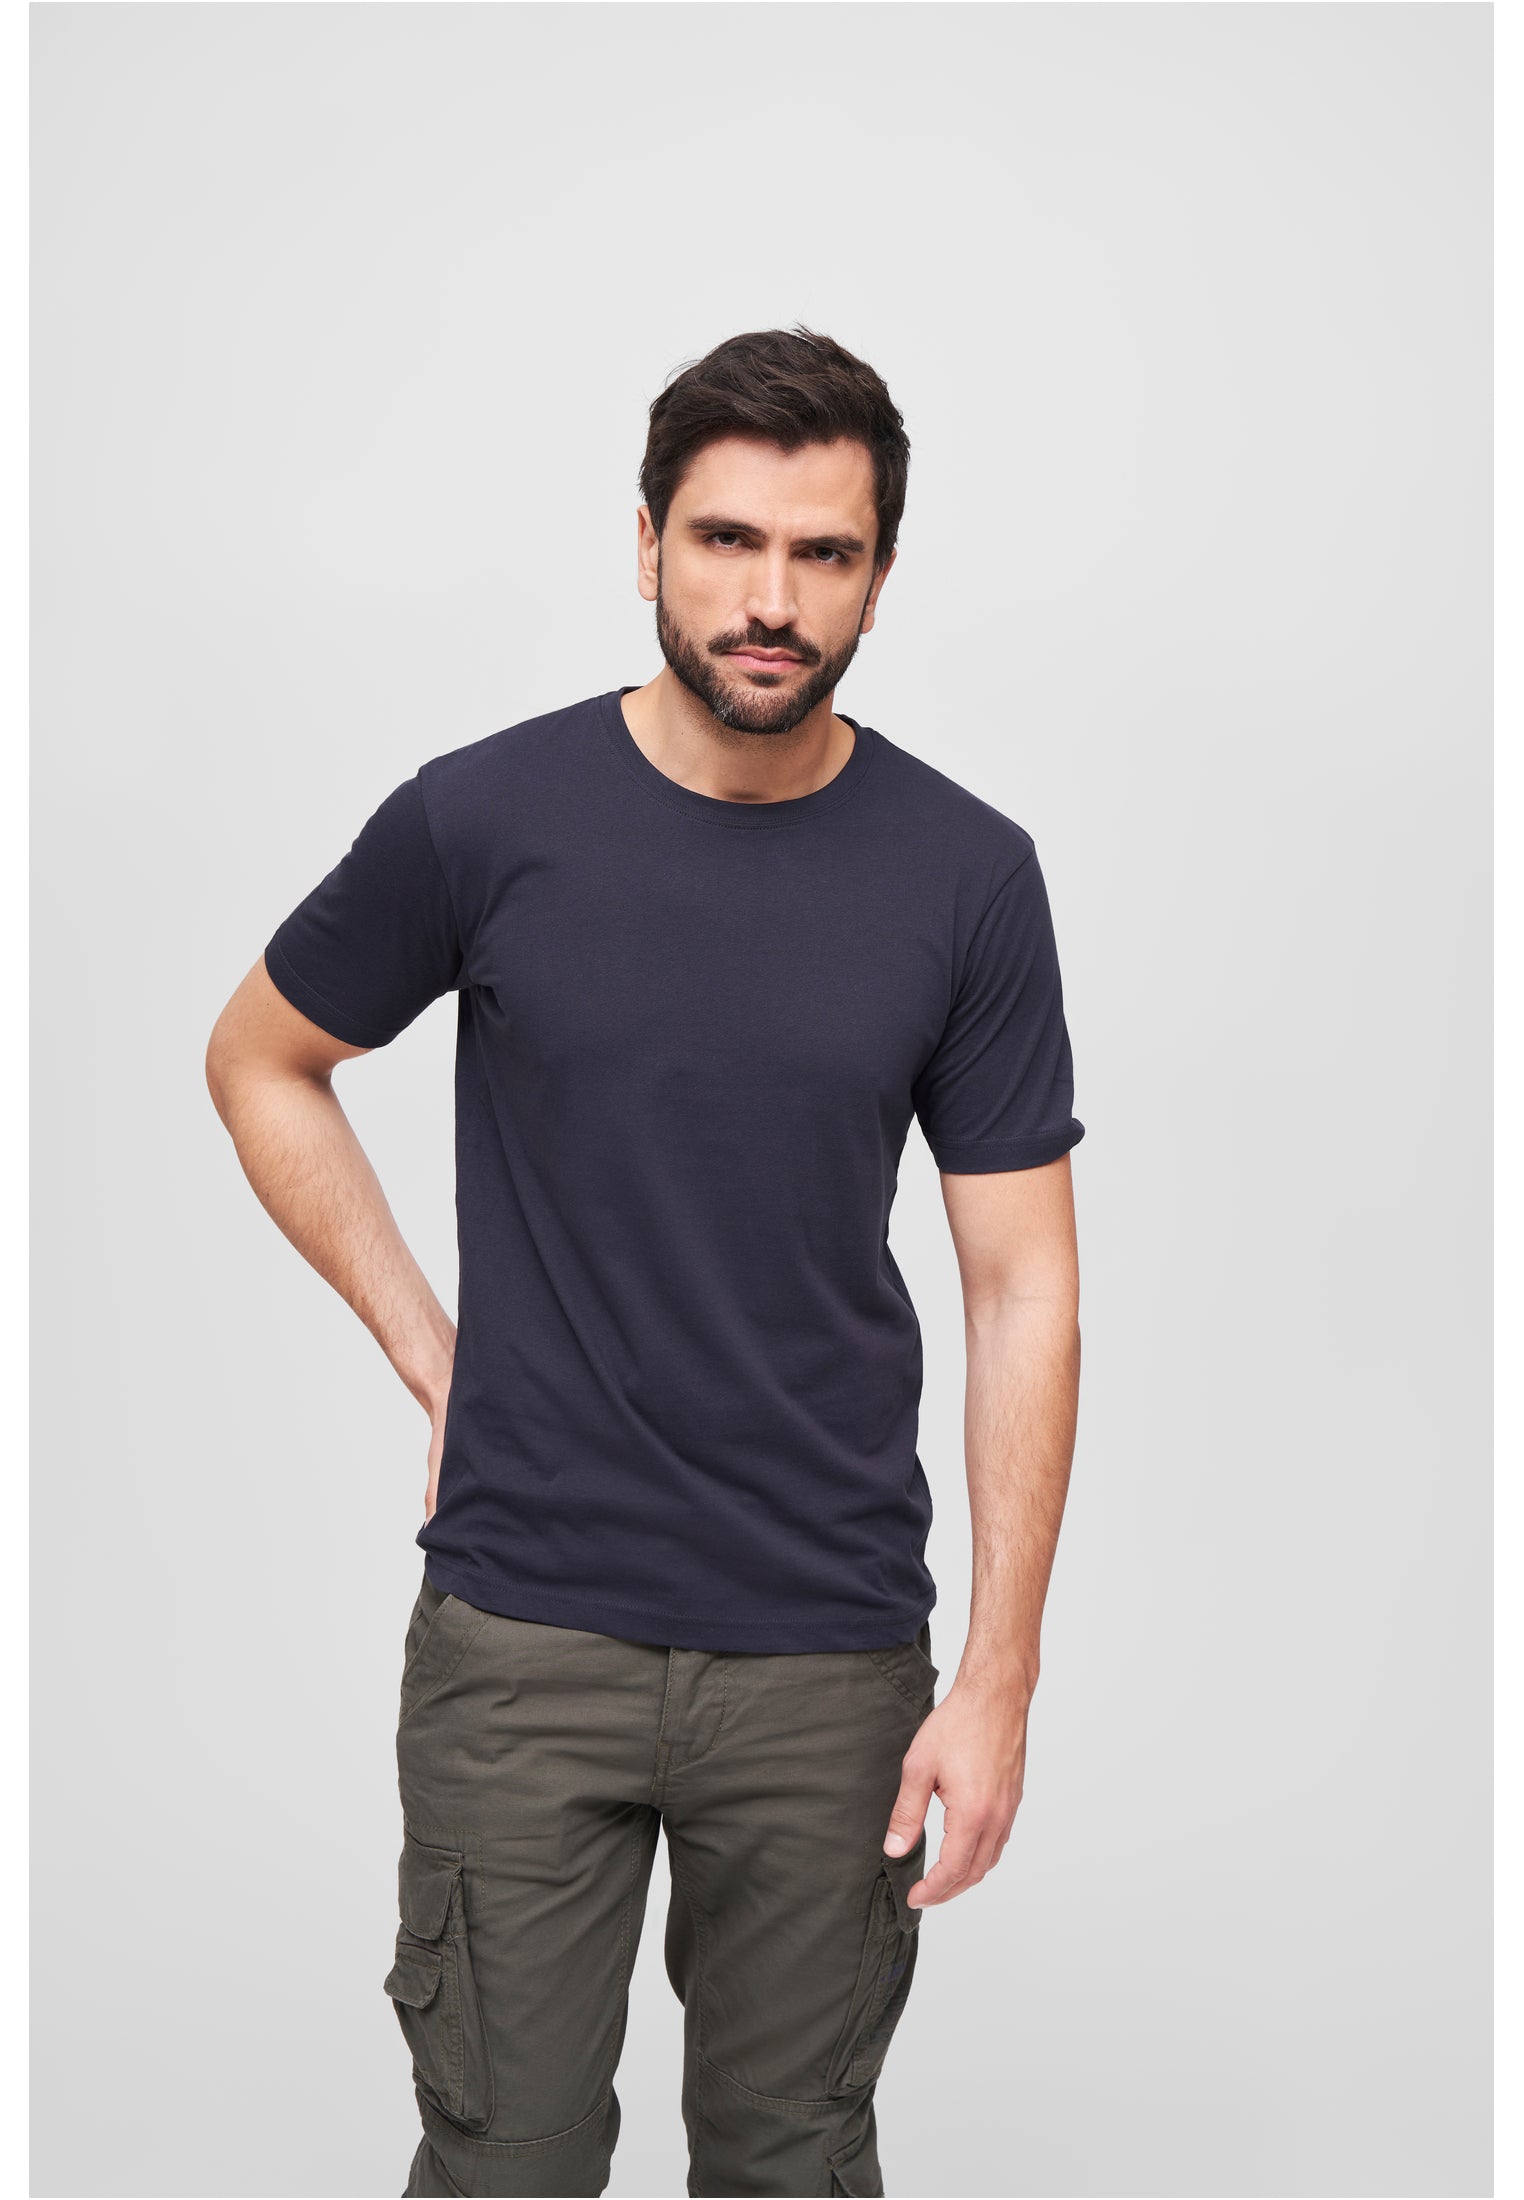 Standard Cotton T-Shirt